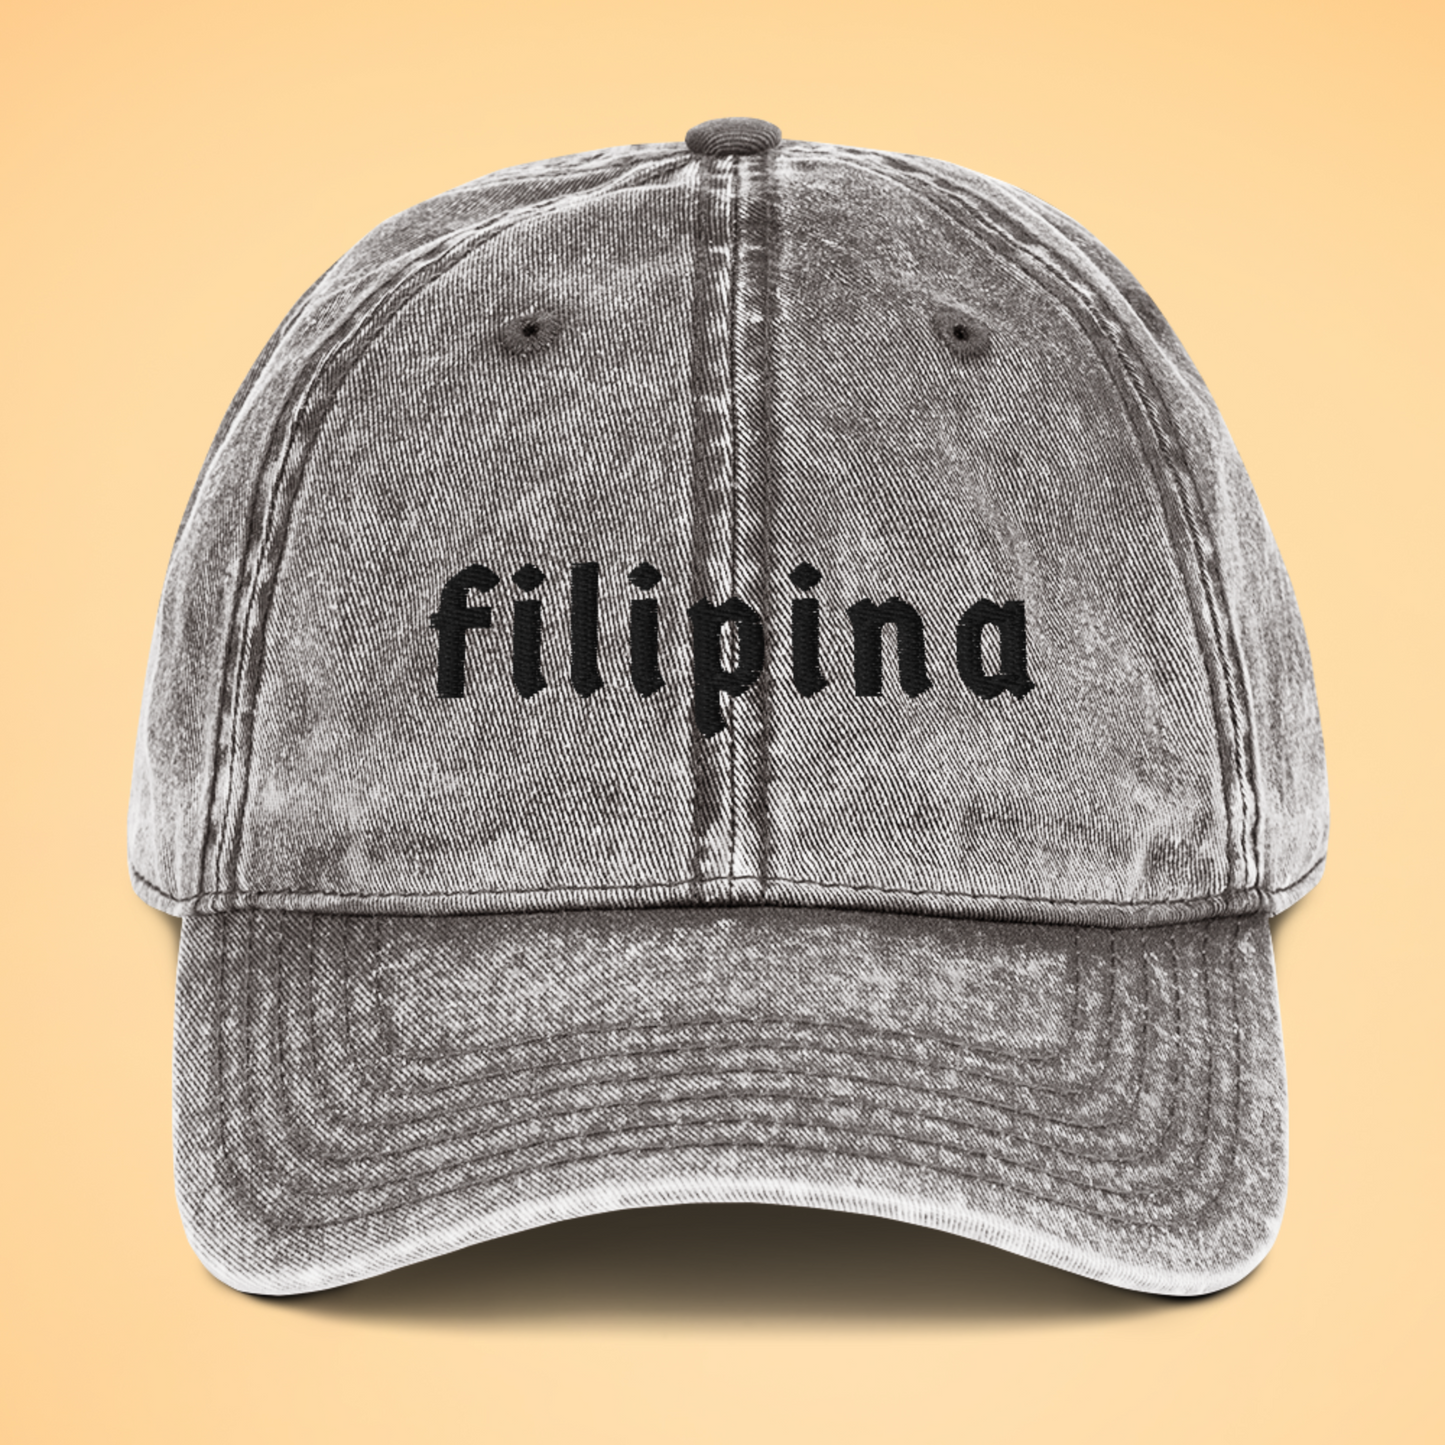 Filipino Cap Filipina Embroidered Vintage Cotton Twill in Gray